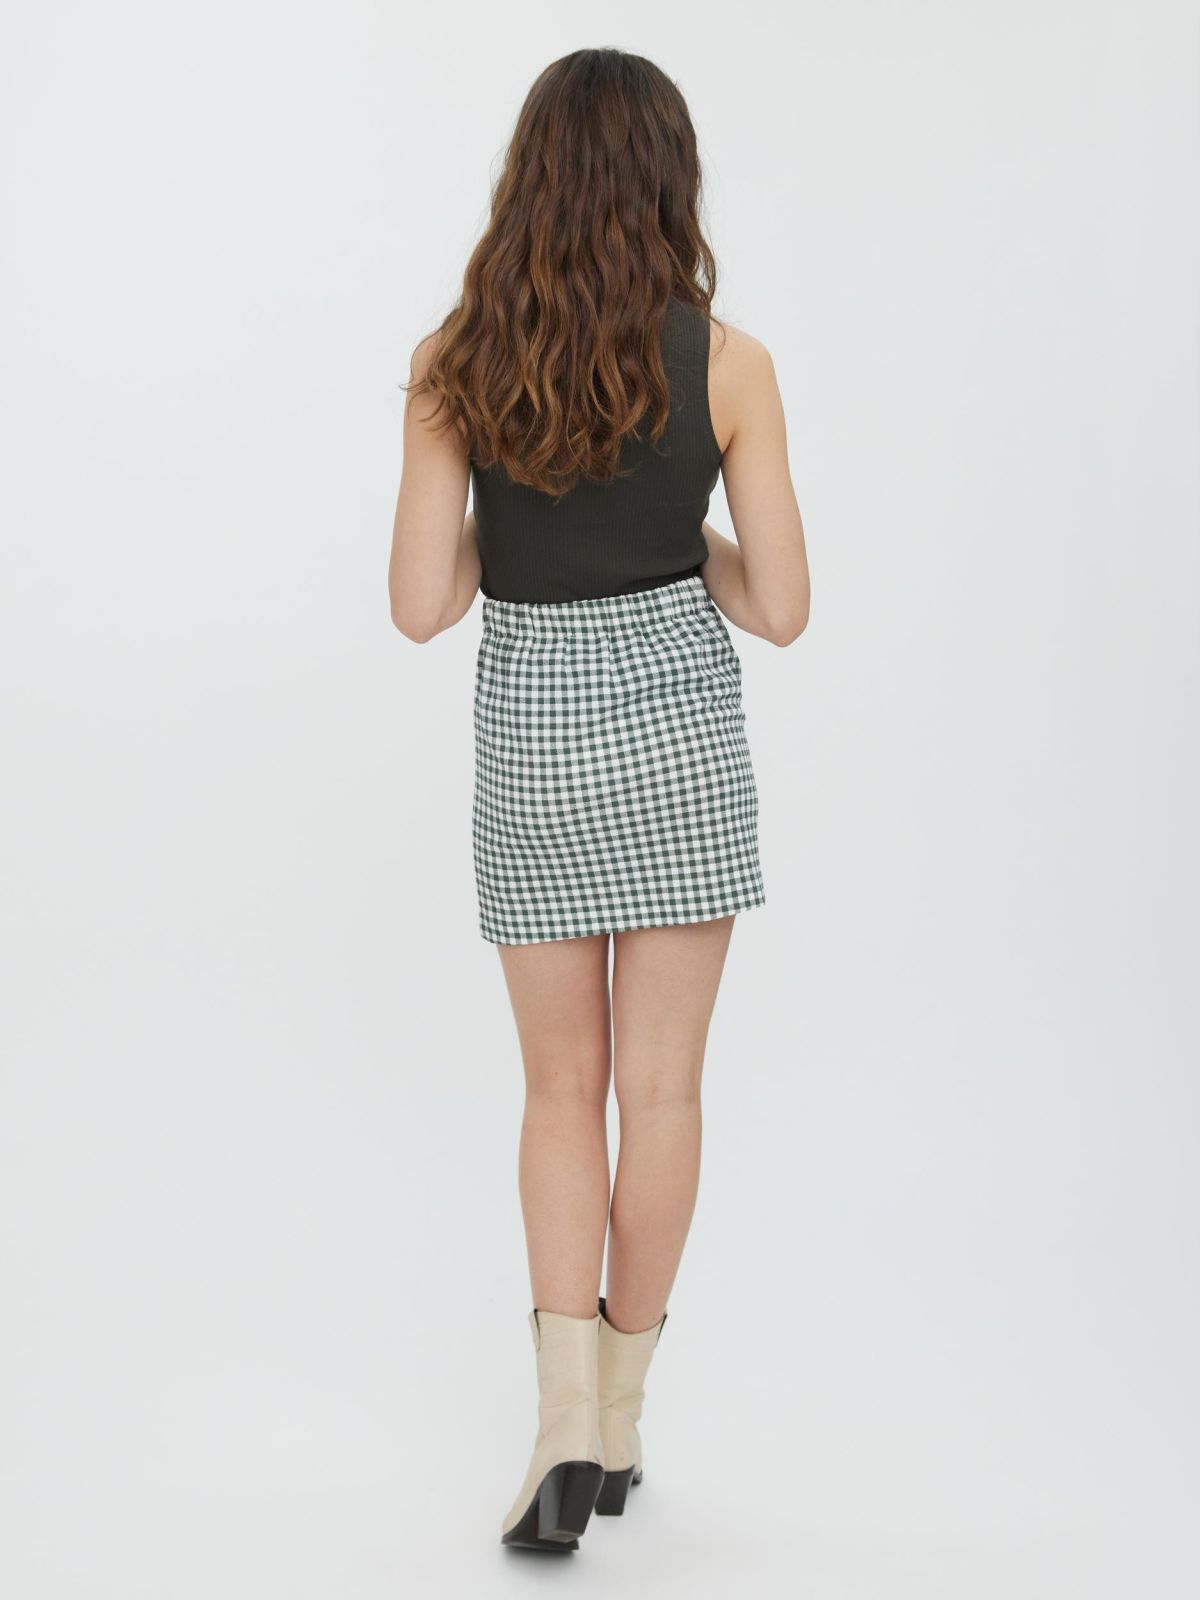  חצאית מיני בהדפס משבצות של VERO MODA